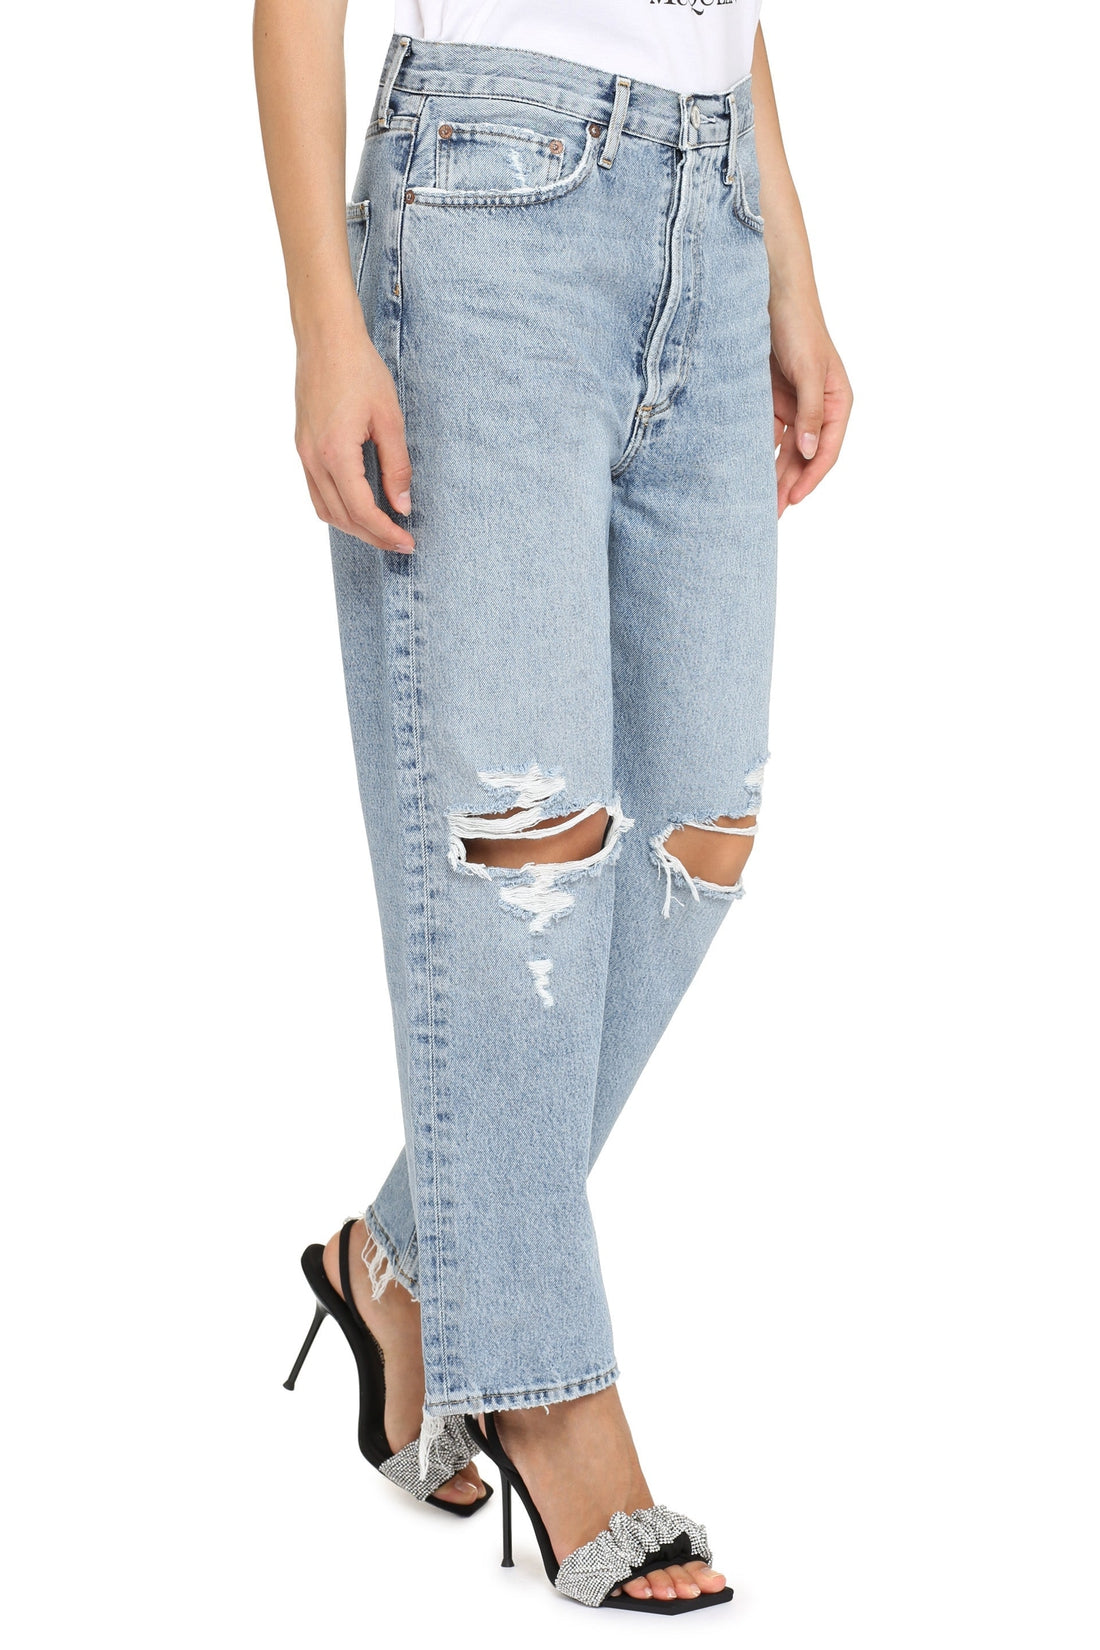 AGOLDE-OUTLET-SALE-Straight leg jeans 90'S Crop-ARCHIVIST